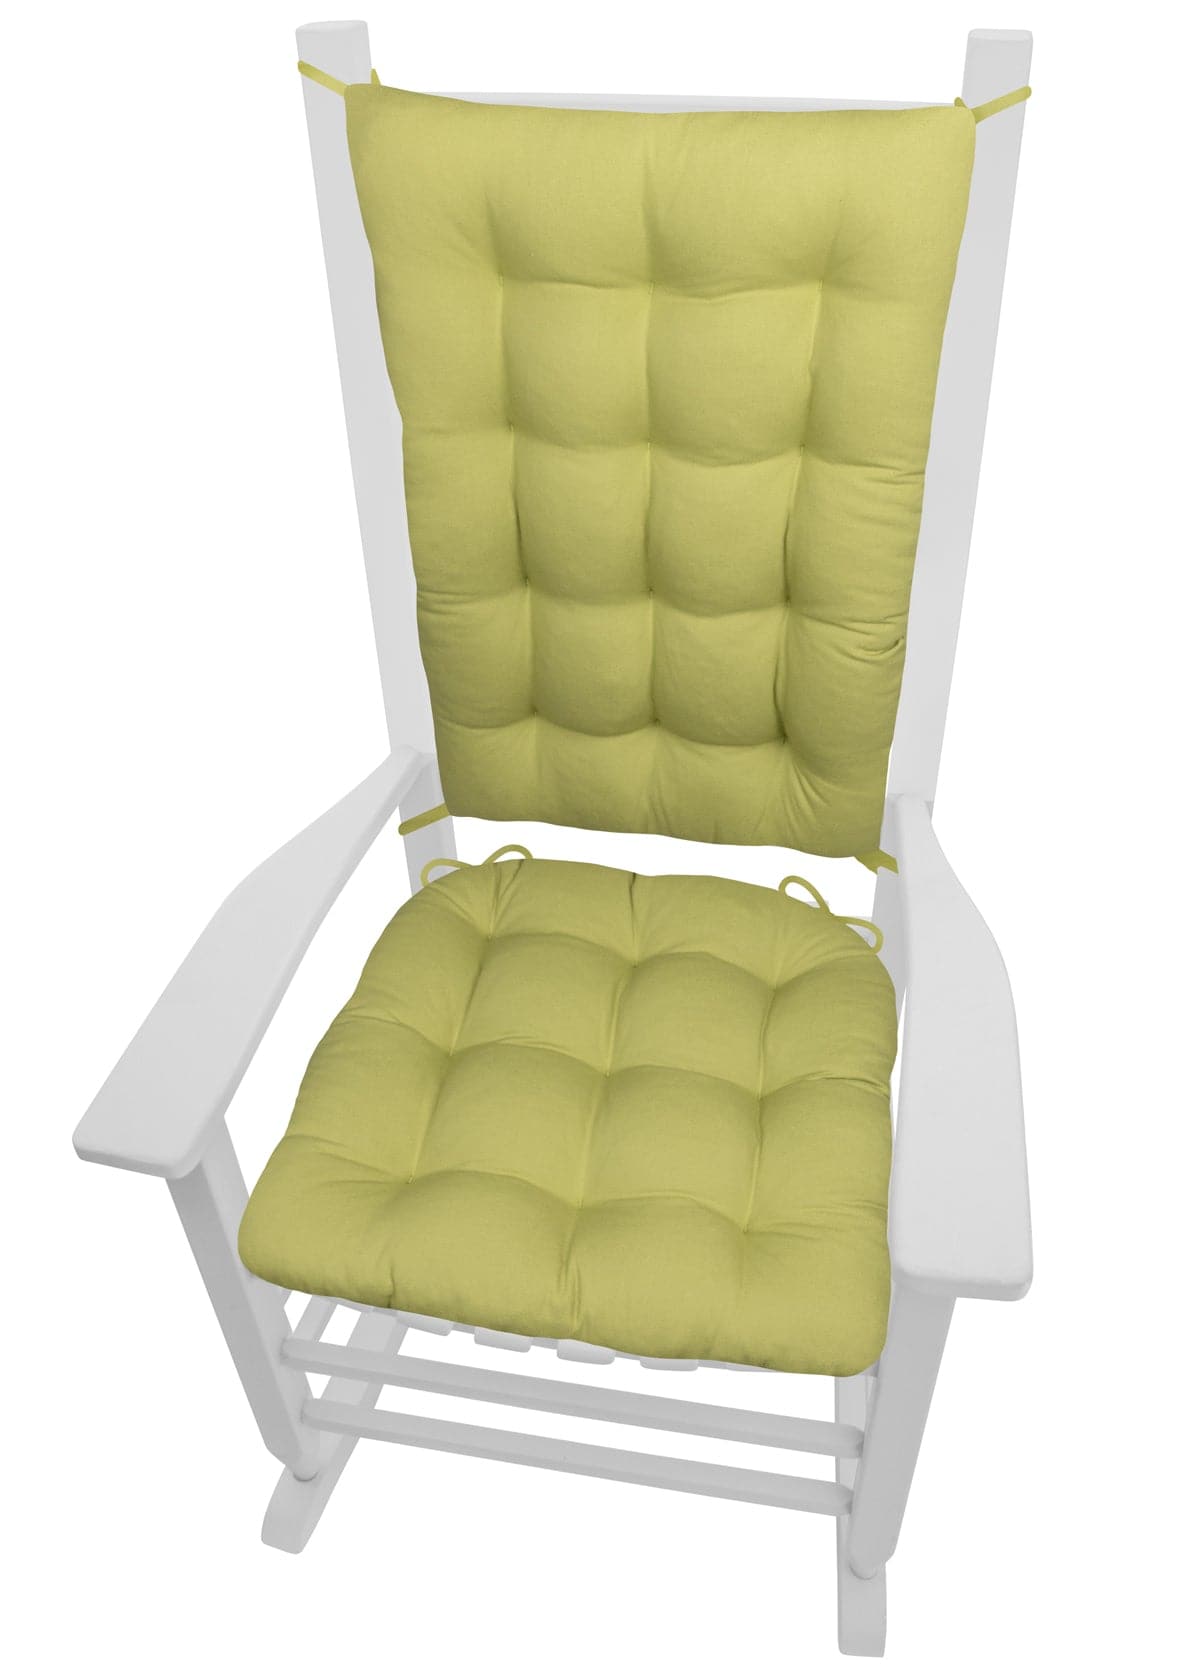 Cotton Duck Pear Green Rocking Chair Cushions - Barnett Home Decor - Green